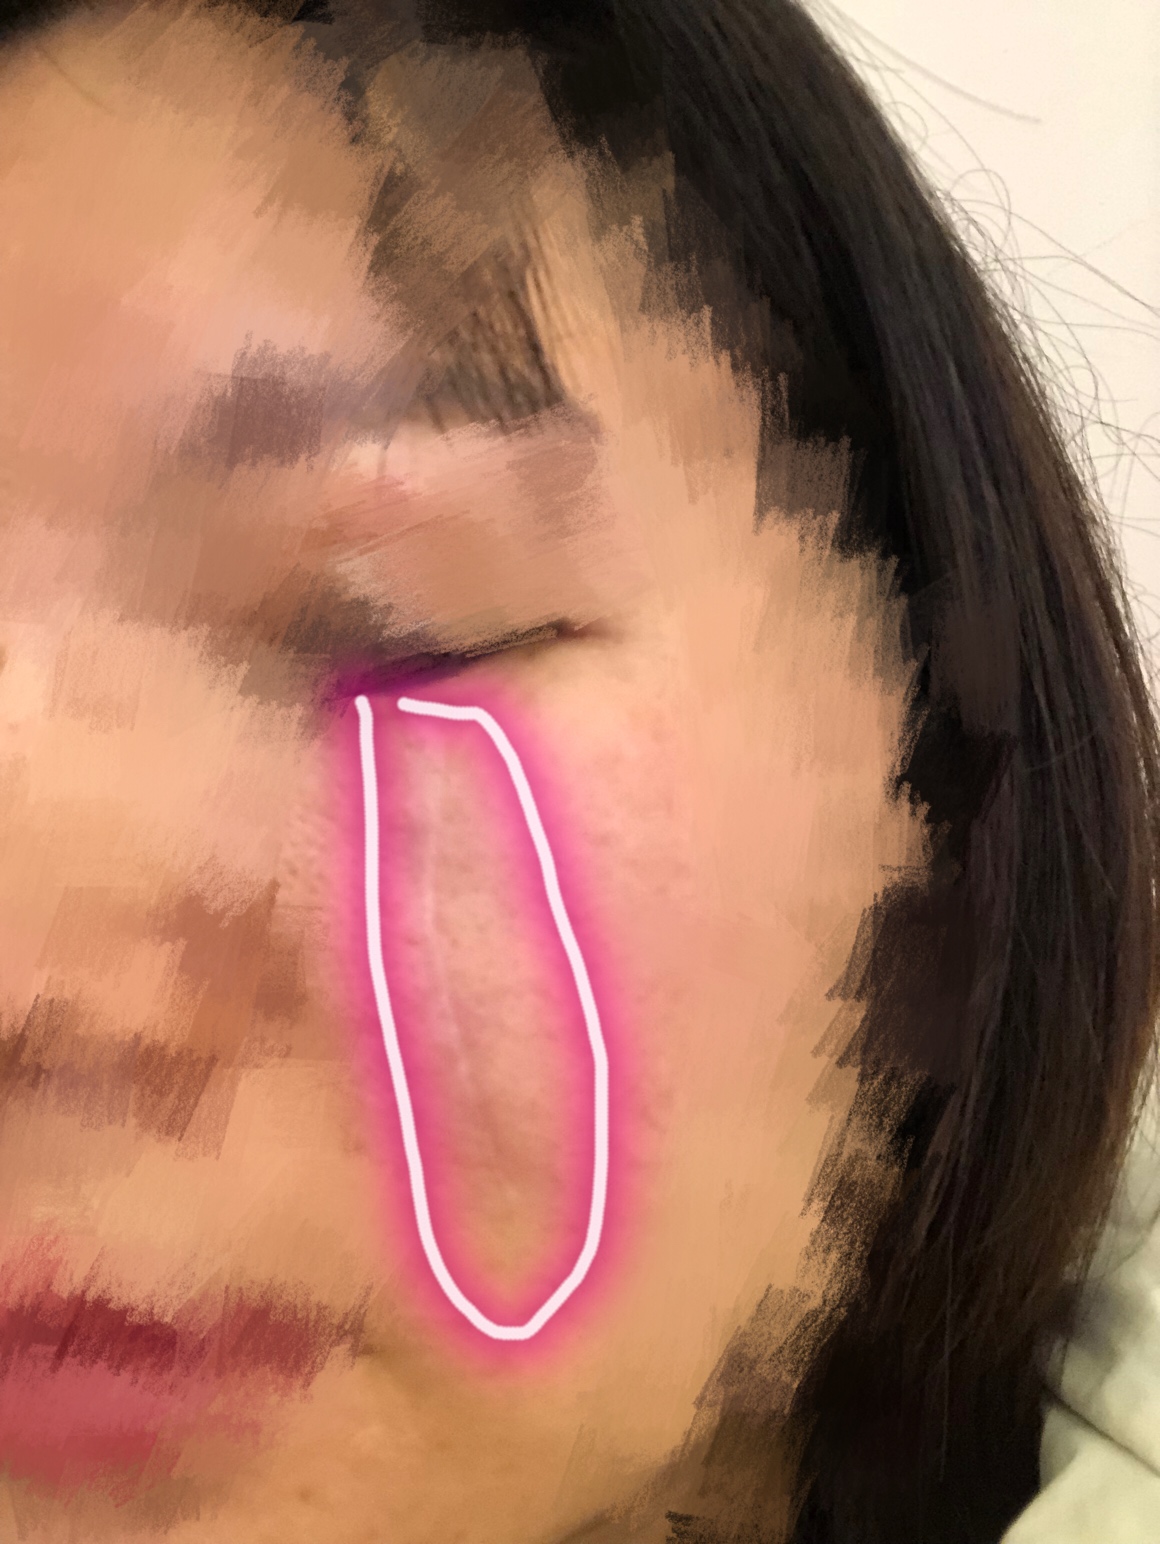 2019.1.11在杨教授那里做了脸上疤痕切缝手术，期待化妆无痕！ 面部凹陷疤痕,手术切缝